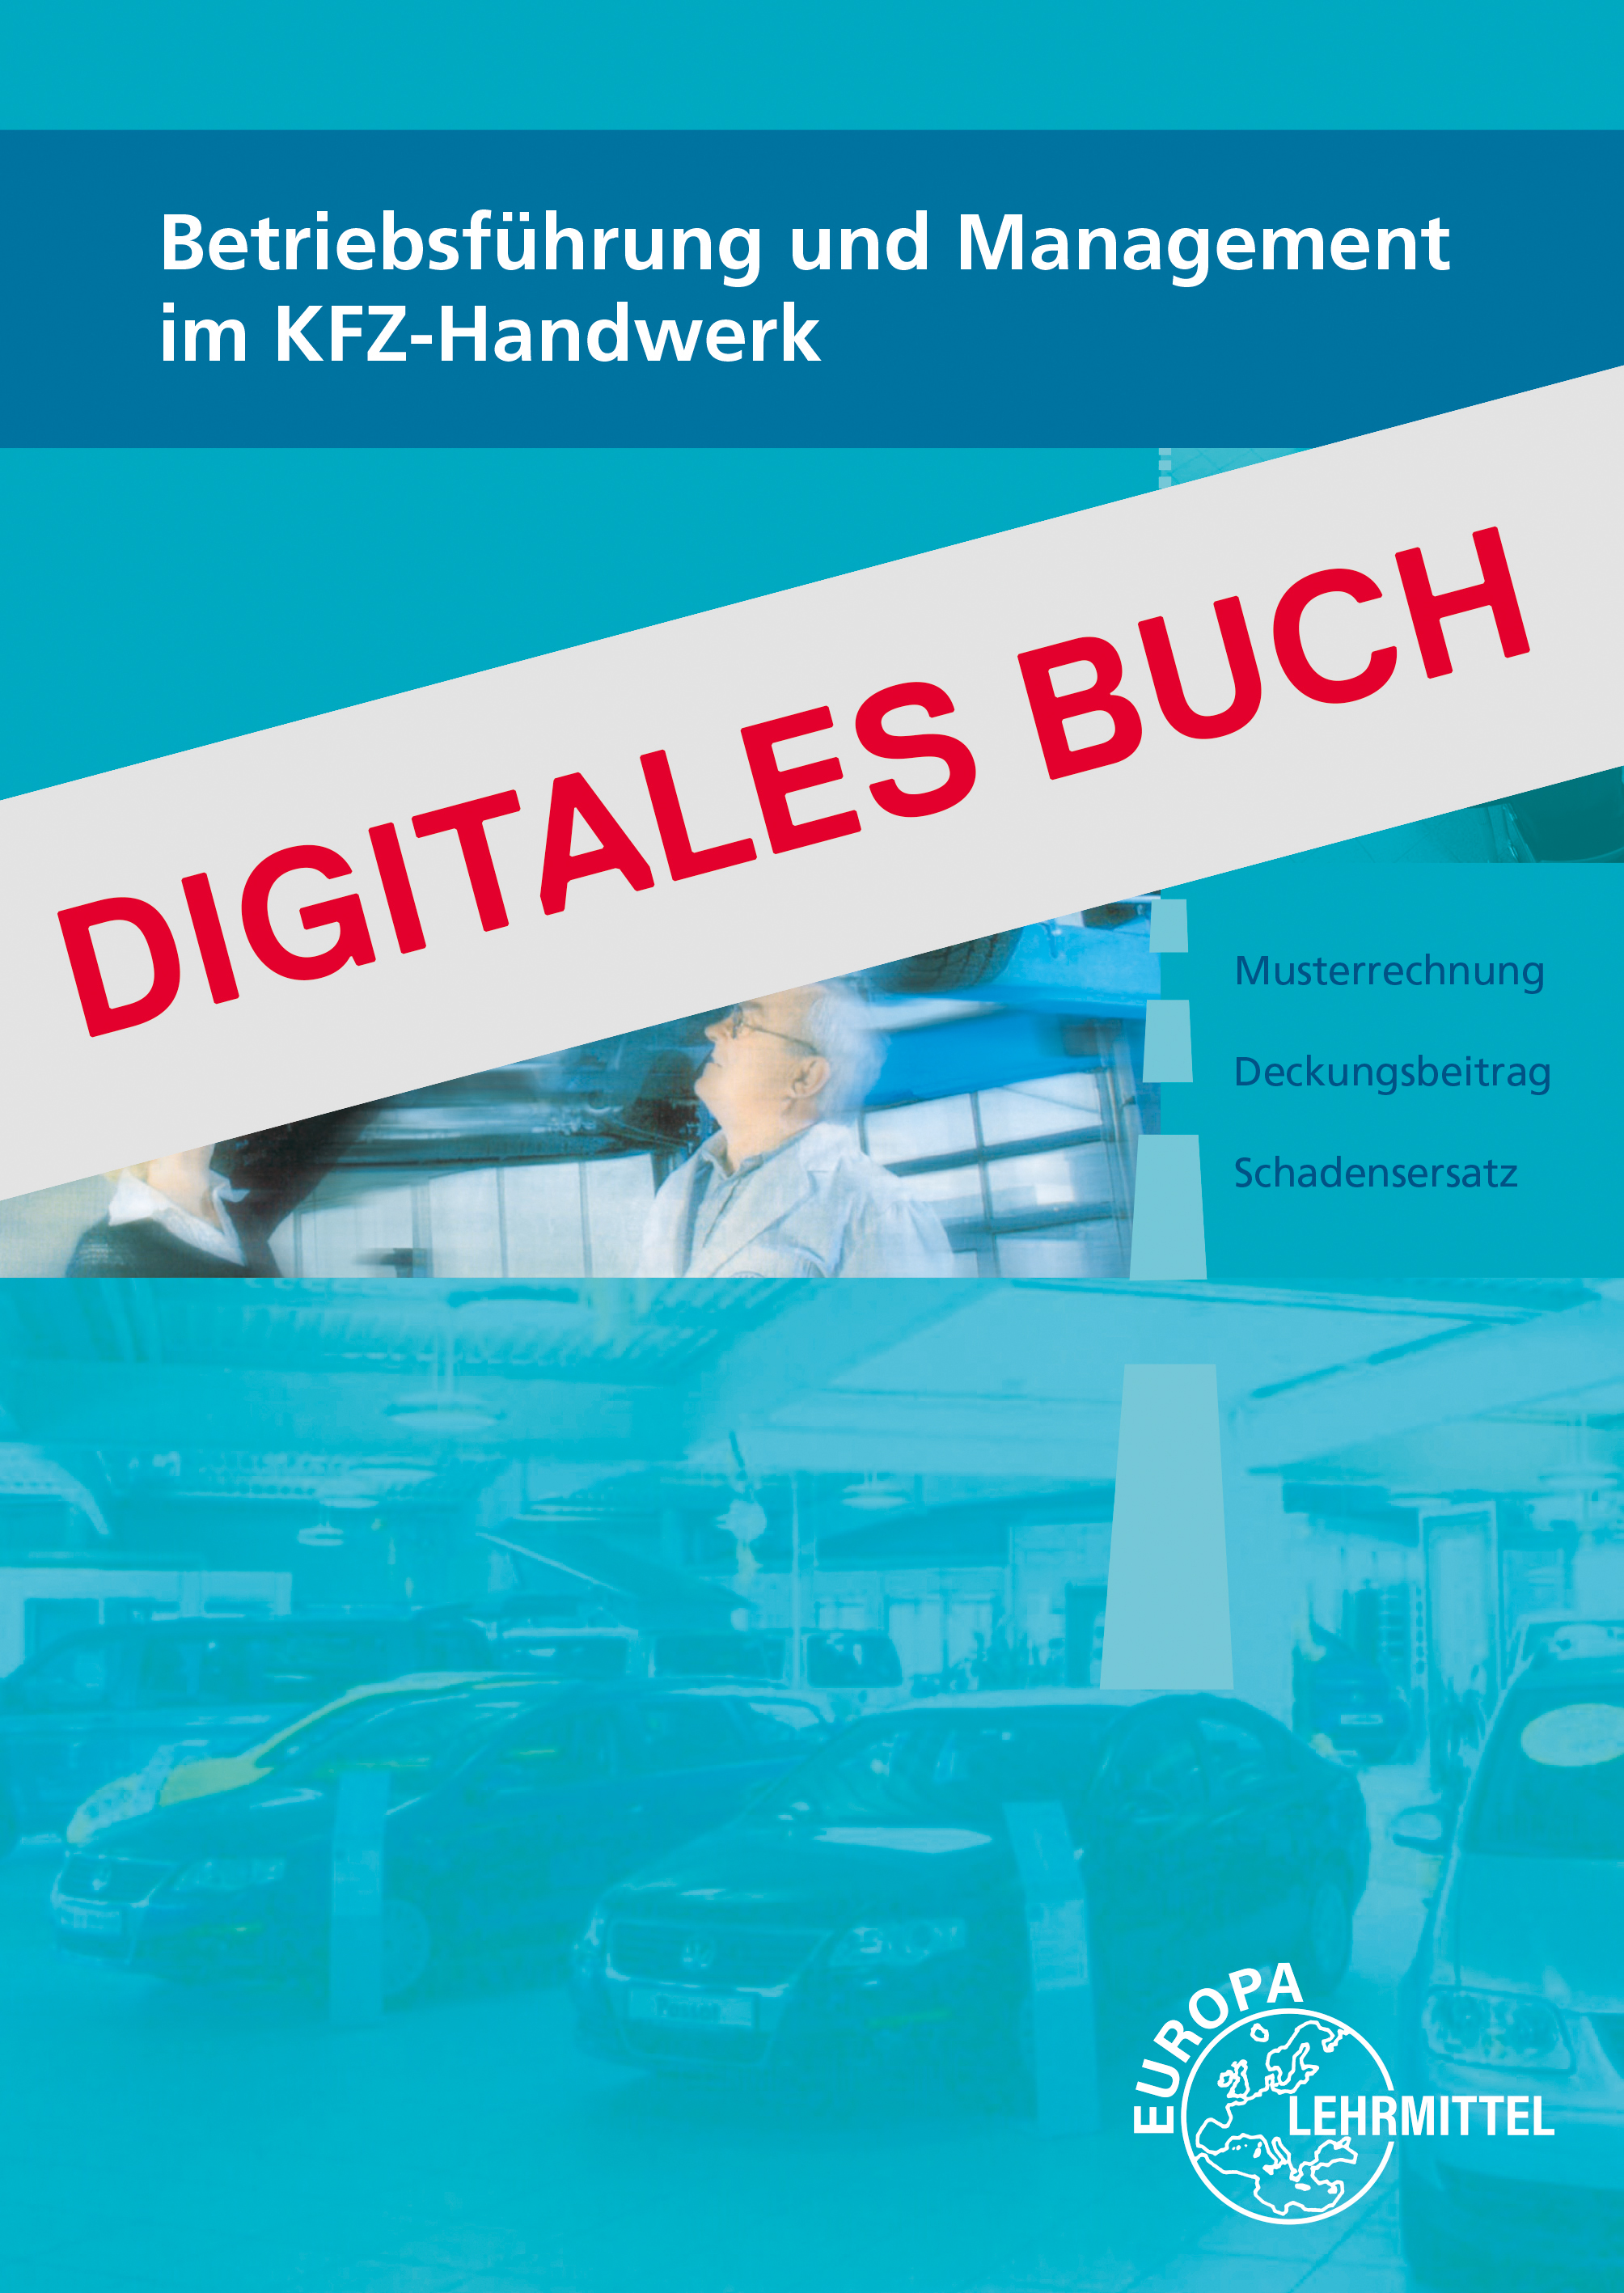 Betriebsführung und Management im KFZ-Handwerk - Digitales Buch